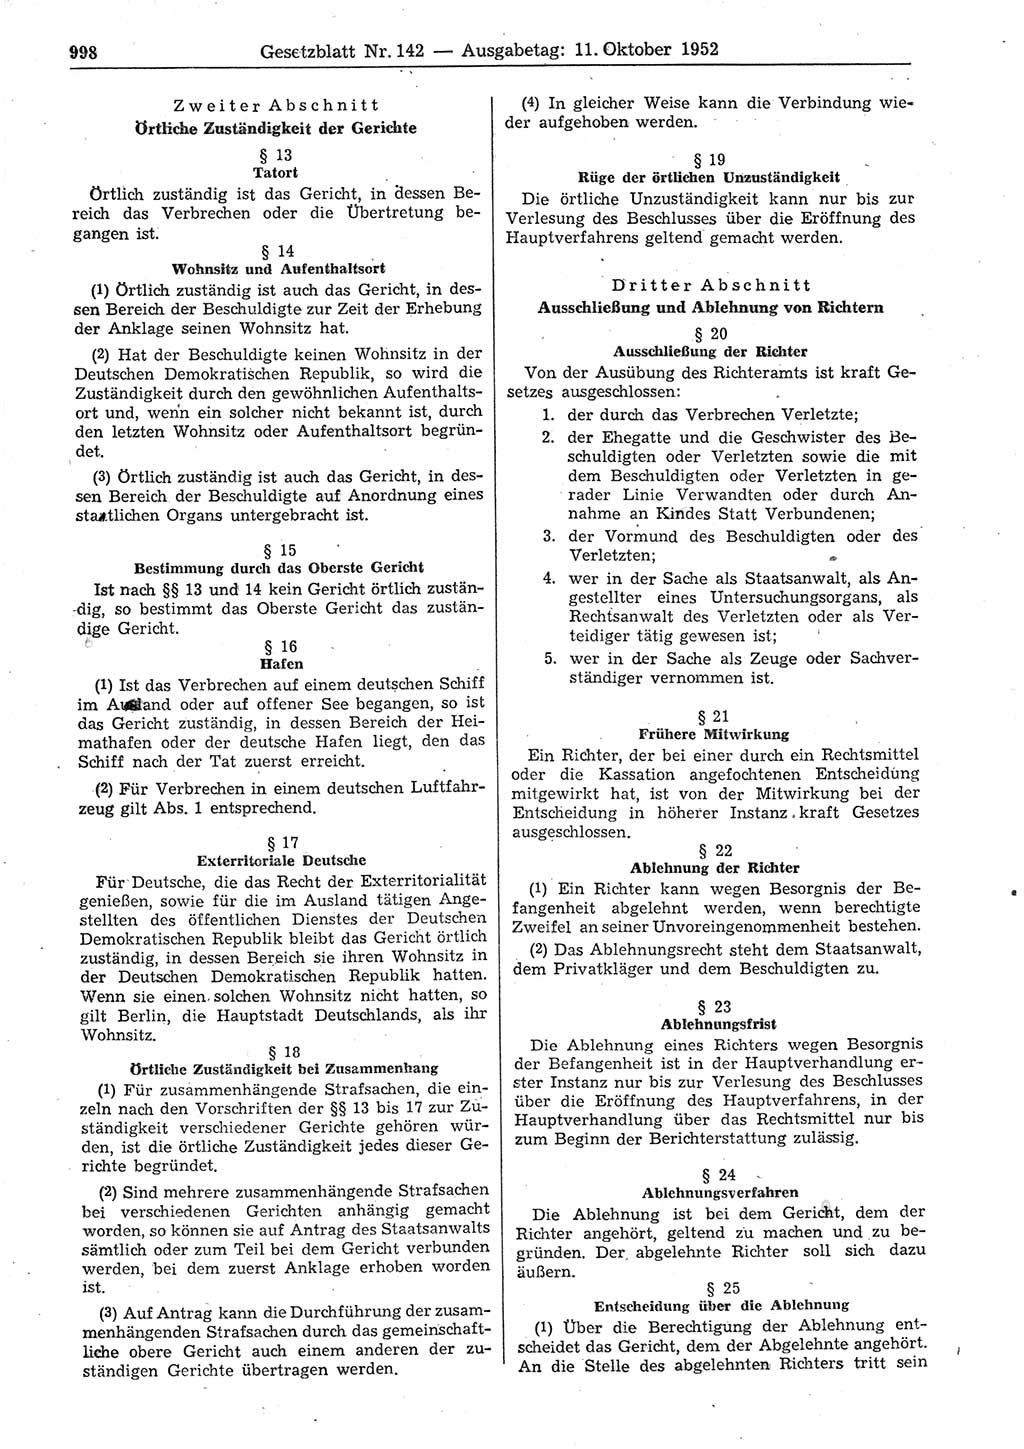 Gesetzblatt (GBl.) der Deutschen Demokratischen Republik (DDR) 1952, Seite 998 (GBl. DDR 1952, S. 998)